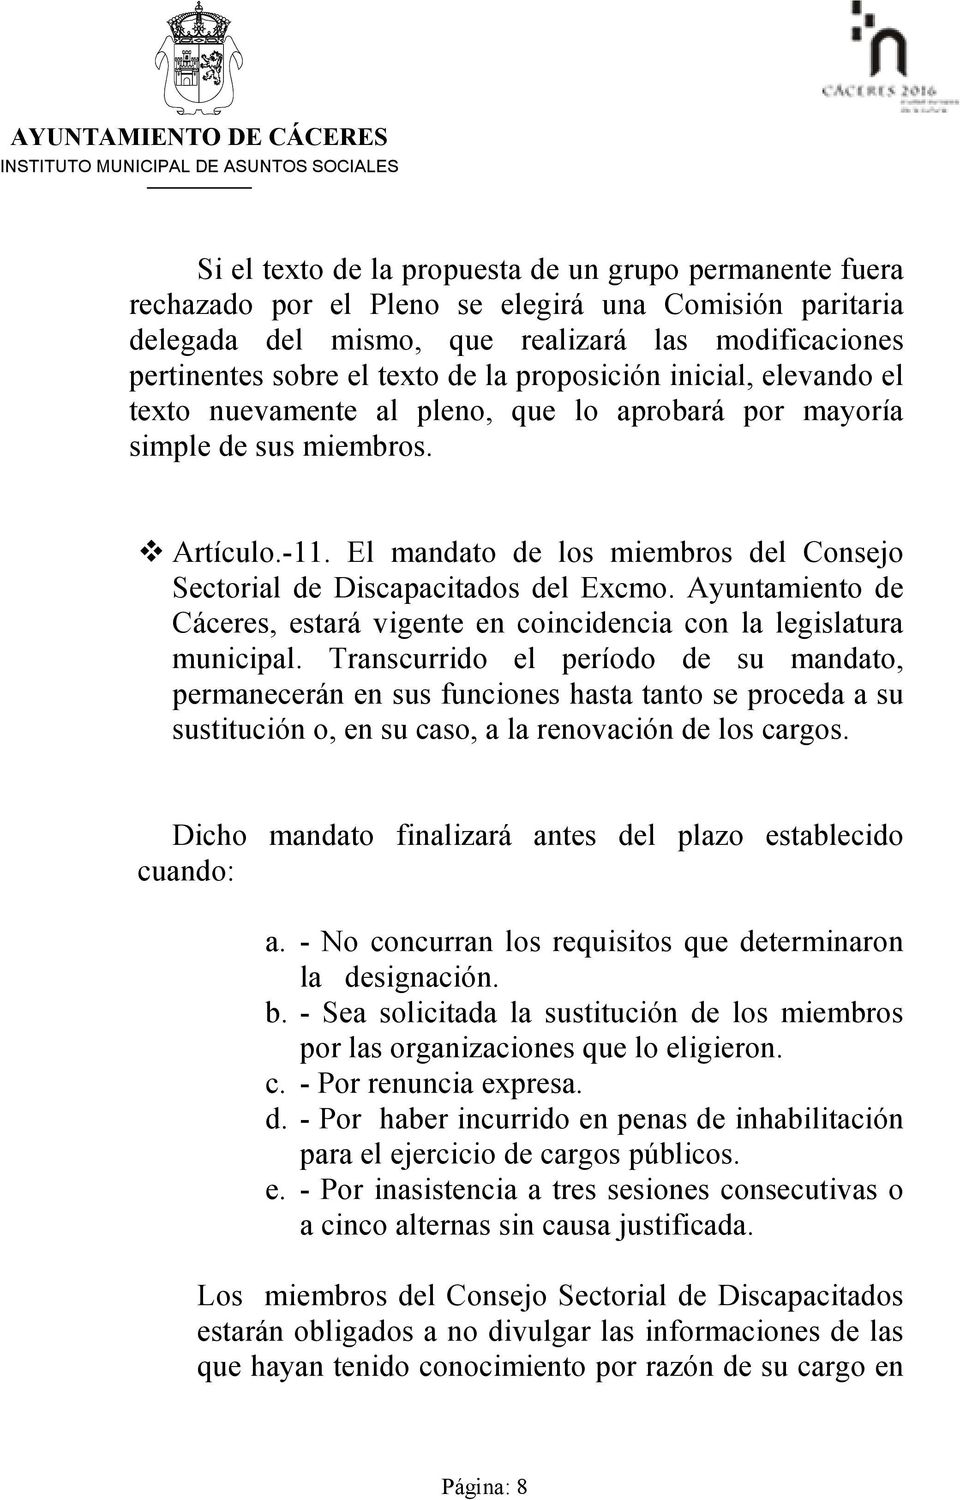 El mandato de los miembros del Consejo Sectorial de Discapacitados del Excmo. Ayuntamiento de Cáceres, estará vigente en coincidencia con la legislatura municipal.